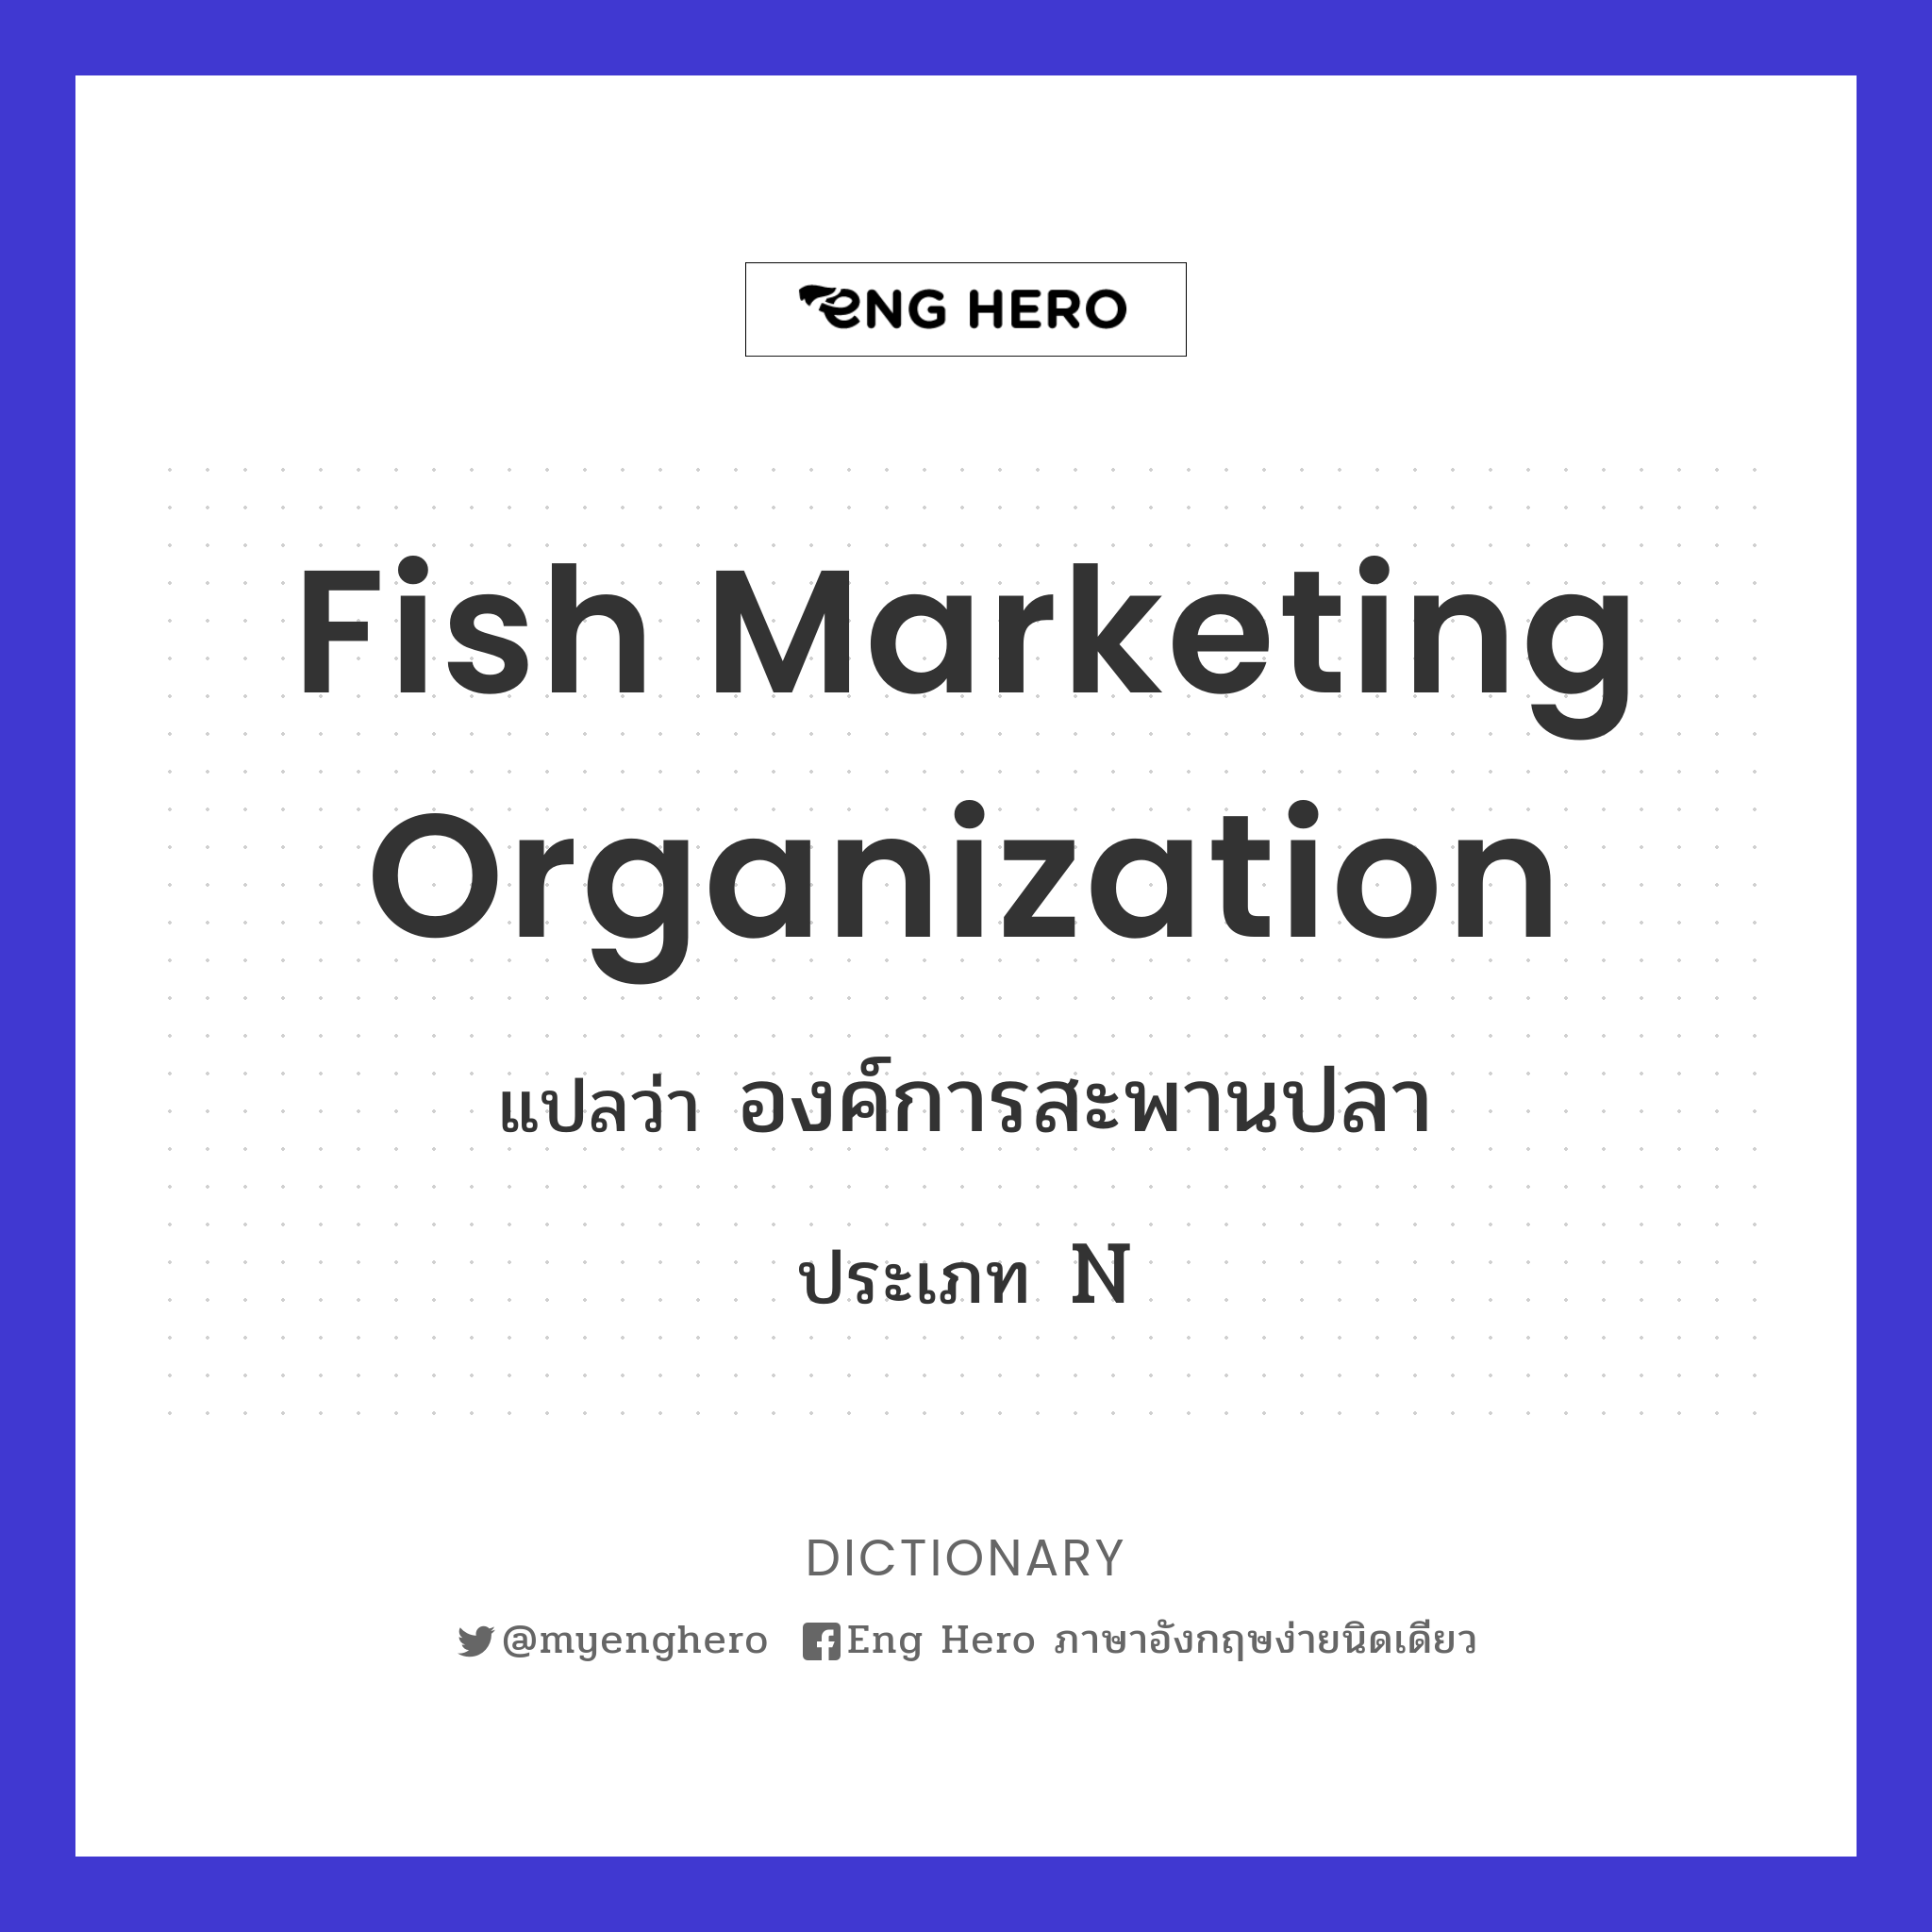 Fish Marketing Organization